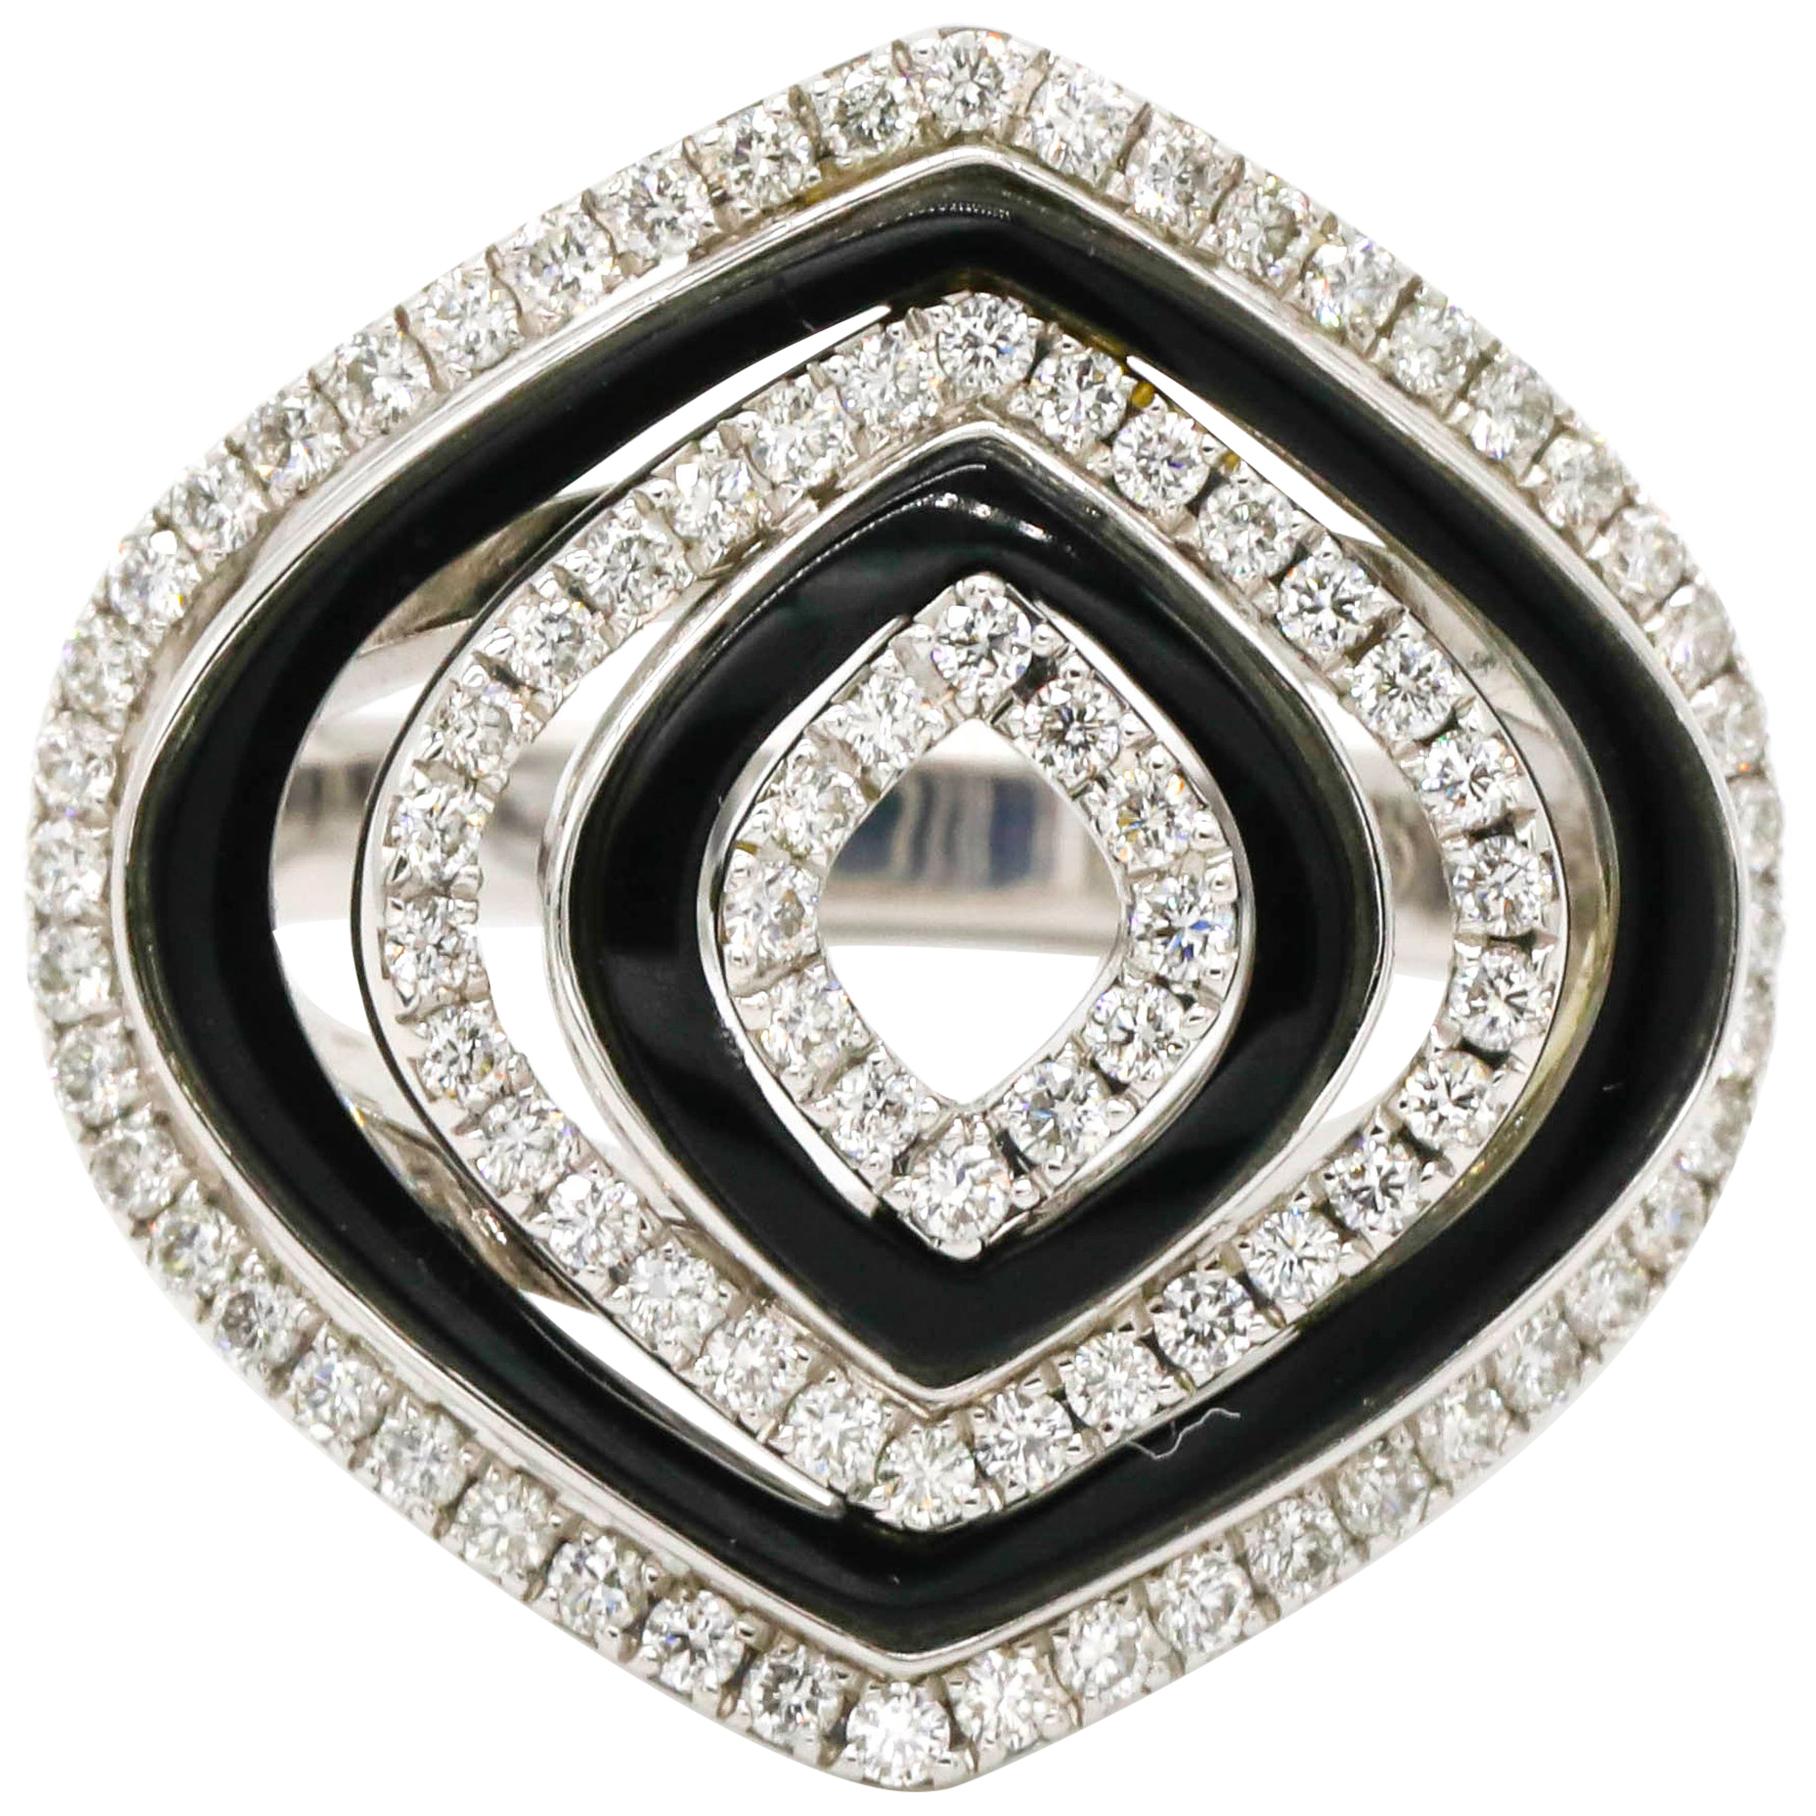 18 Karat Weißgold 0,75 Karat Diamant Pave Schwarz Onyx Cocktail Ring

Dieser moderne Ring besteht aus insgesamt 0,75 Karat Diamanten in runder Form und schwarzen Onyx-Edelsteinen in 18 Karat Weißgold.

Wir garantieren für alle verkauften Produkte